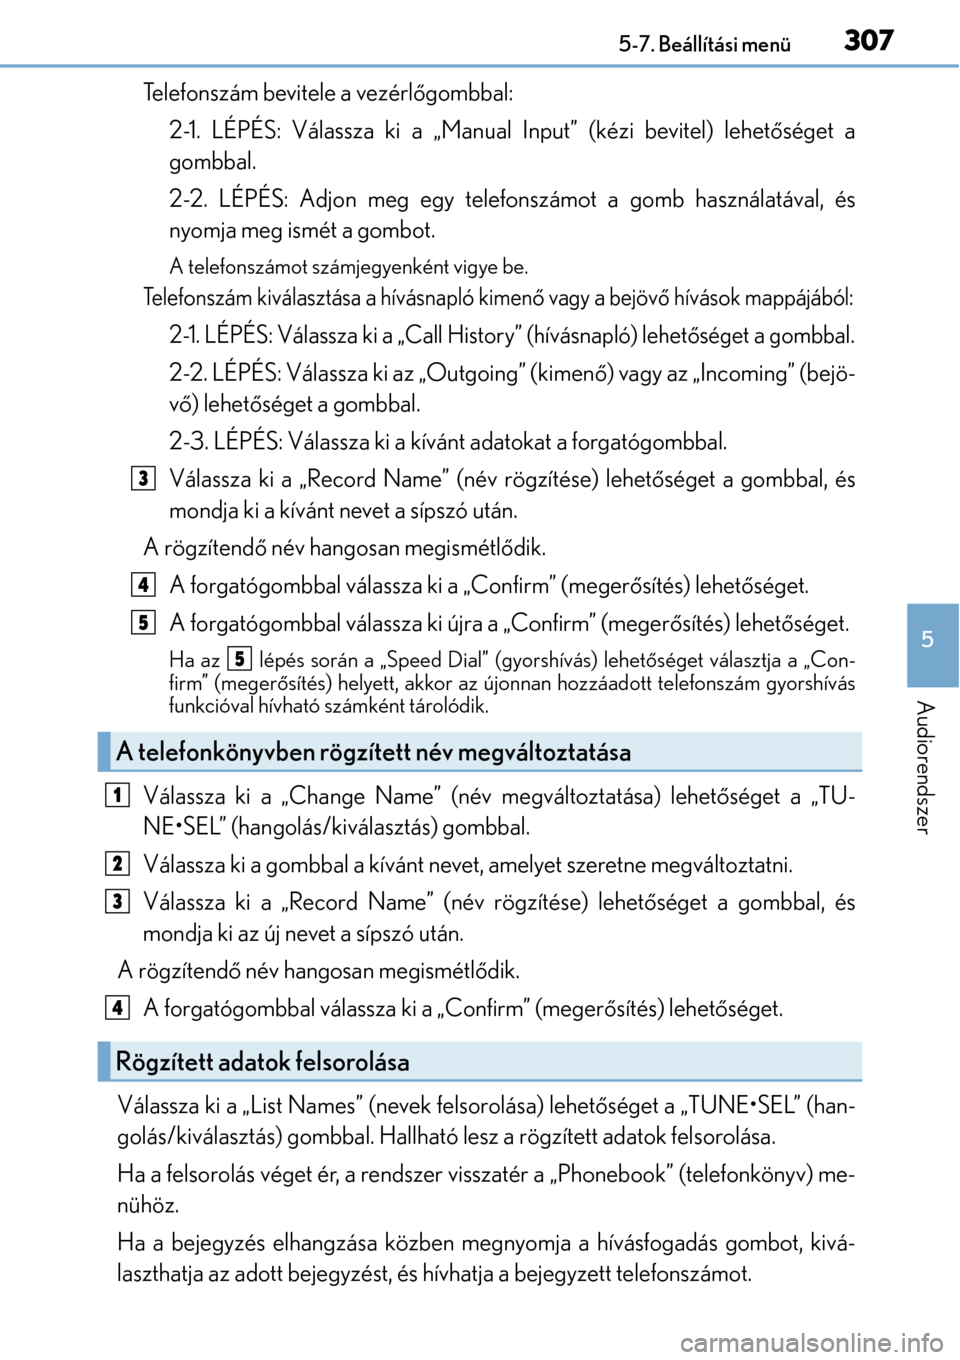 Lexus CT200h 2014  Kezelési útmutató (in Hungarian) 3075-7. Beállítási menü
5
Audiorendszer
Telefonszám bevitele a vezérlőgombbal:
2-1. LÉPÉS: Válassza ki a „Man ual Input” (kézi bevitel) lehetőséget a
gombbal.
2-2. LÉPÉS: Adjon meg 